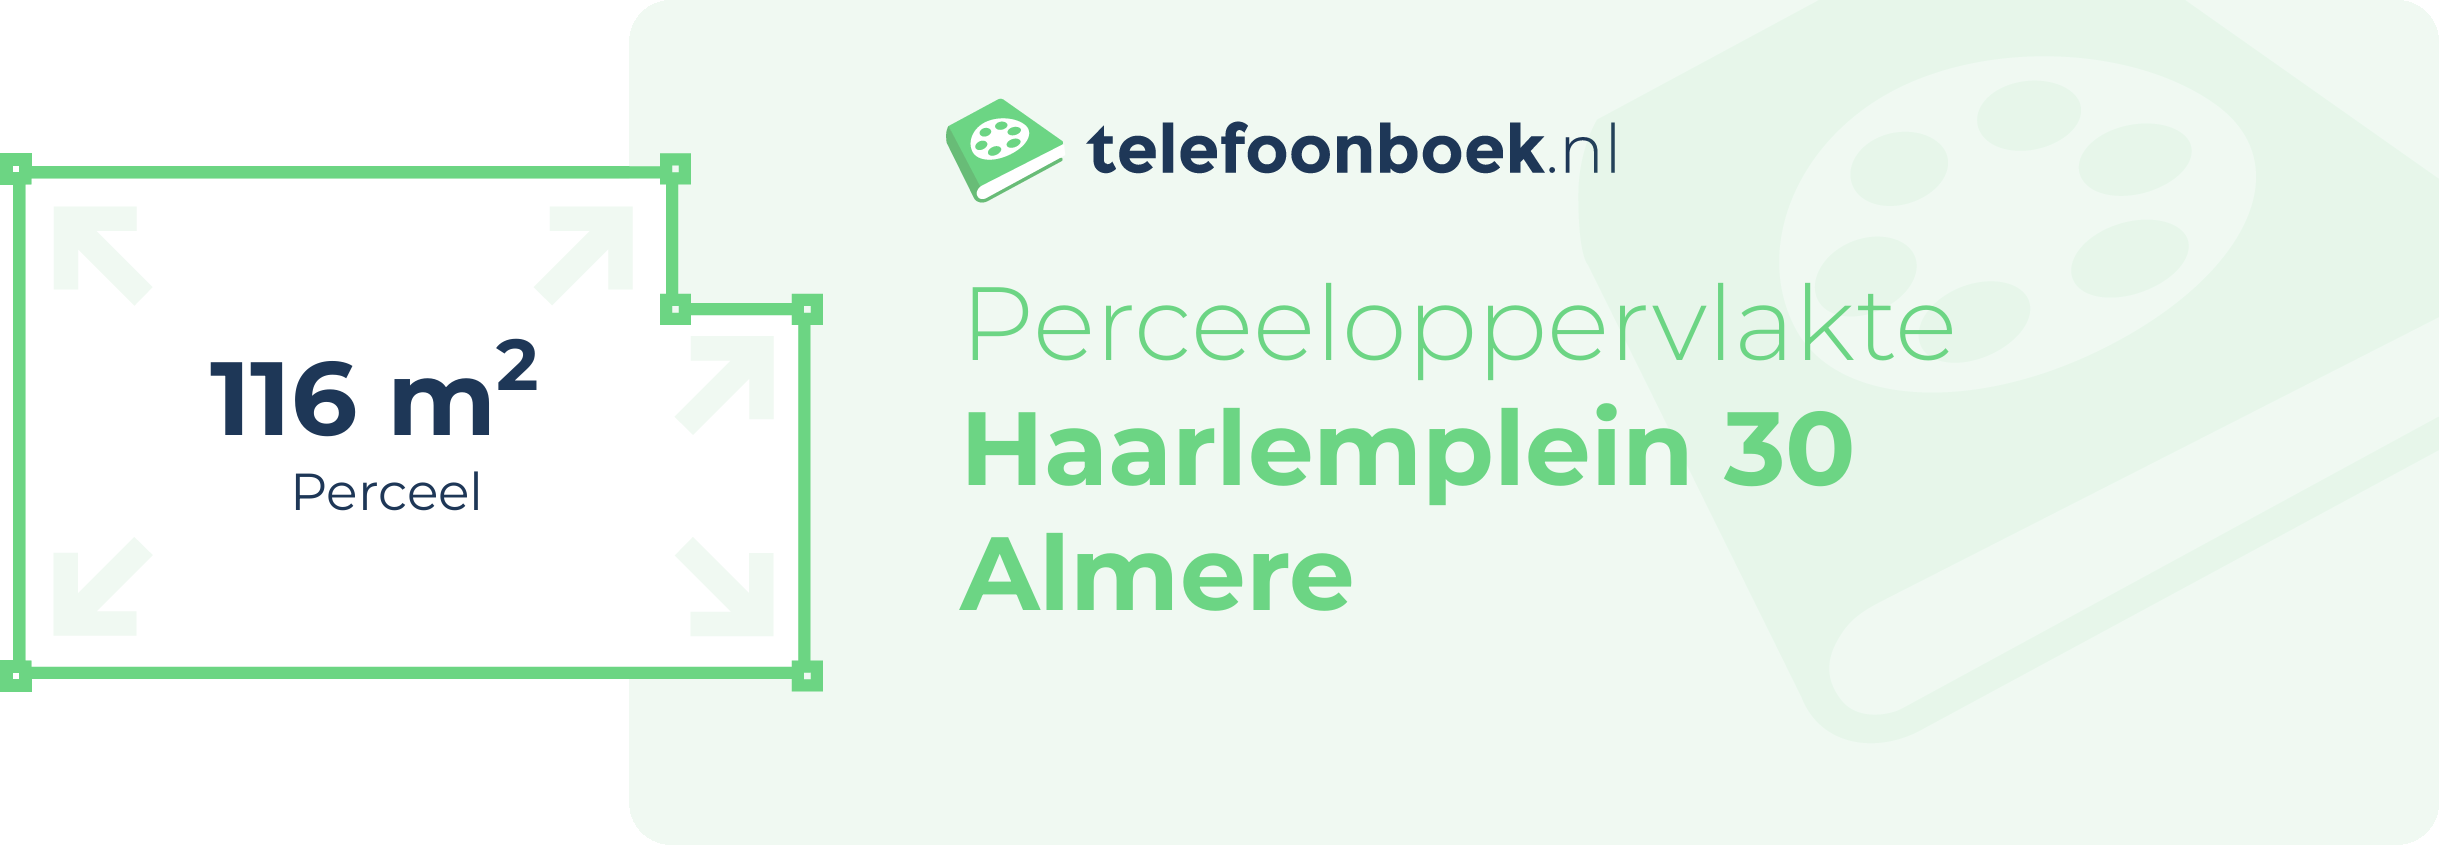 Perceeloppervlakte Haarlemplein 30 Almere